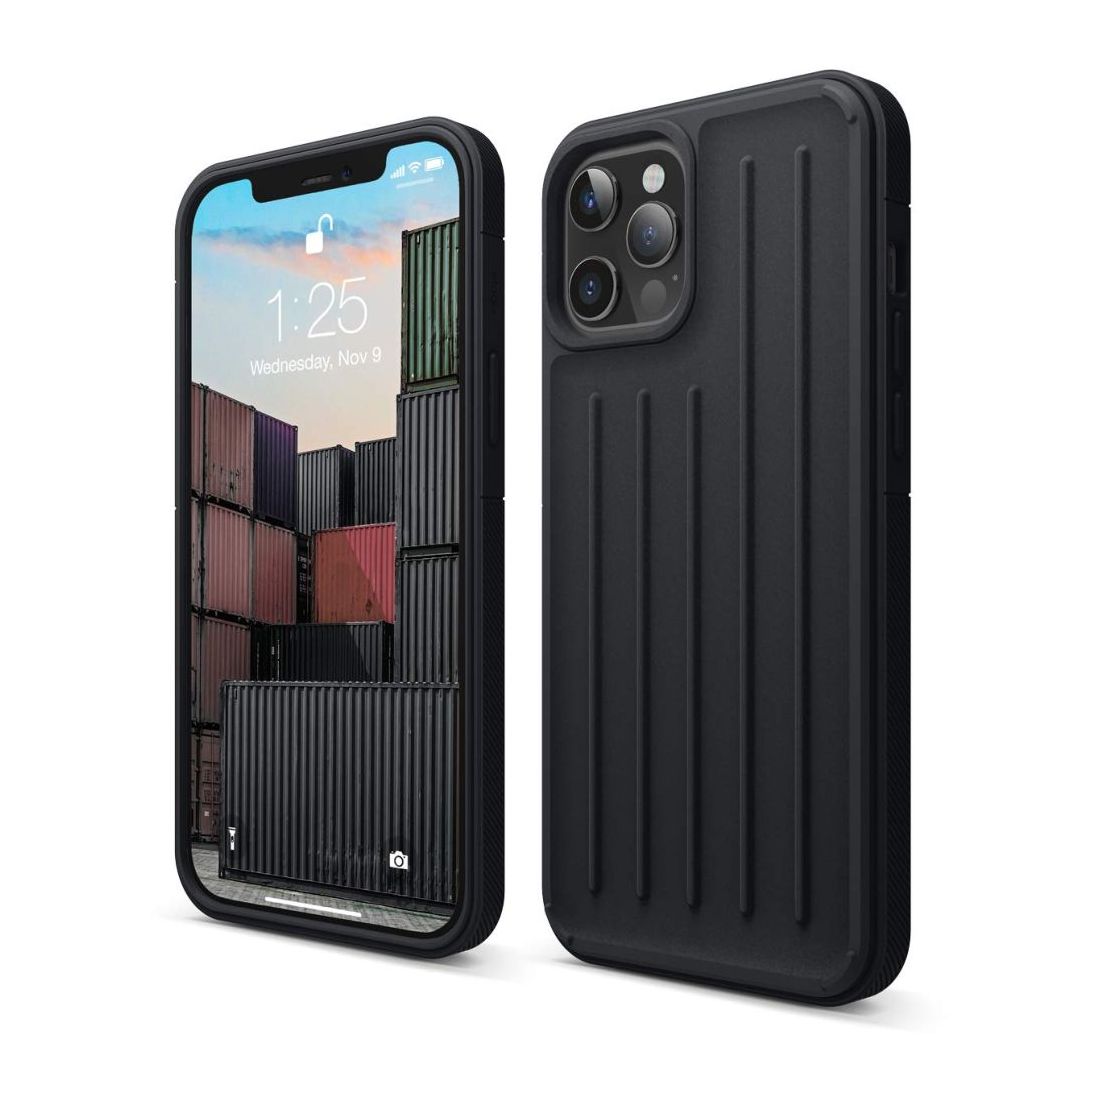 Elago Armor Case for iPhone 12 Pro Max Black